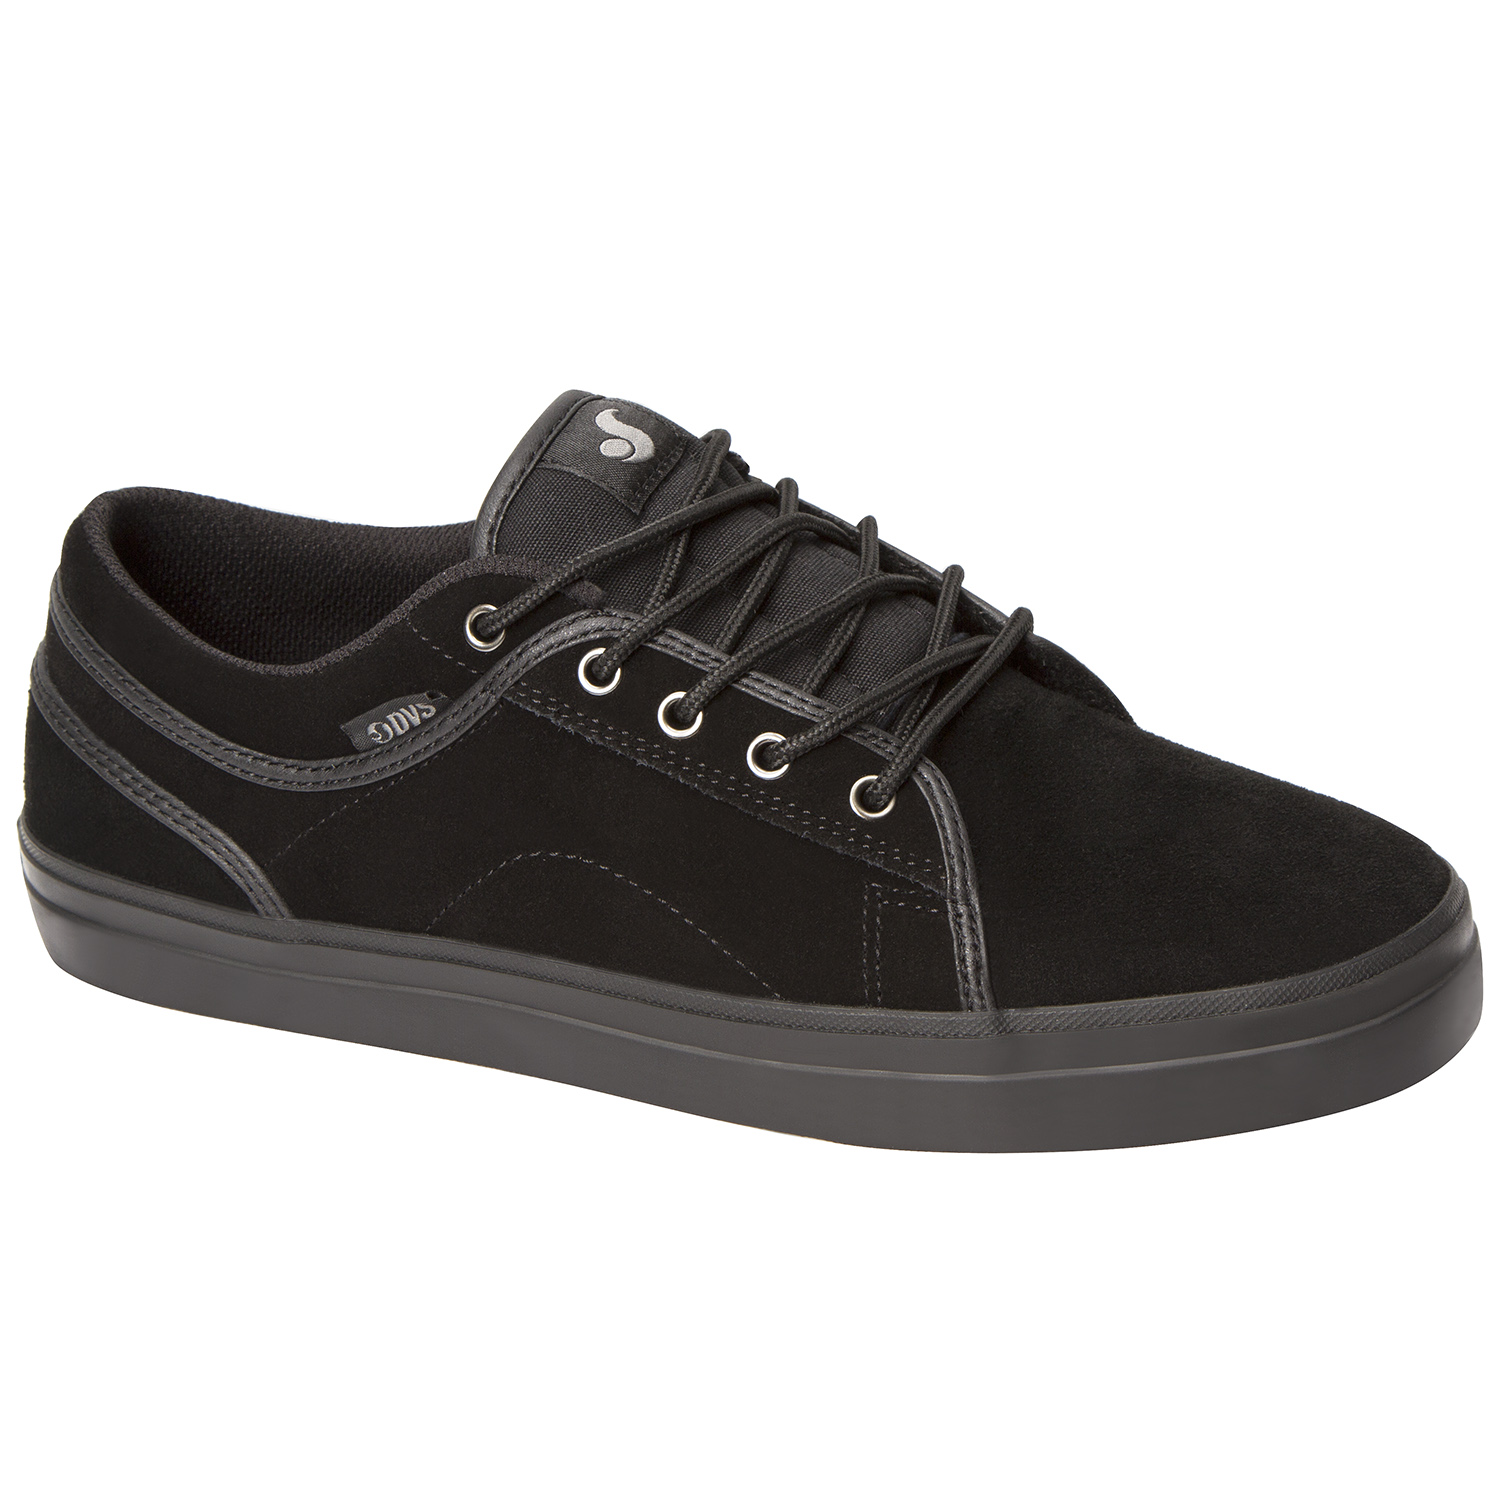 DVS Shoes Aversa Black/Black Suede